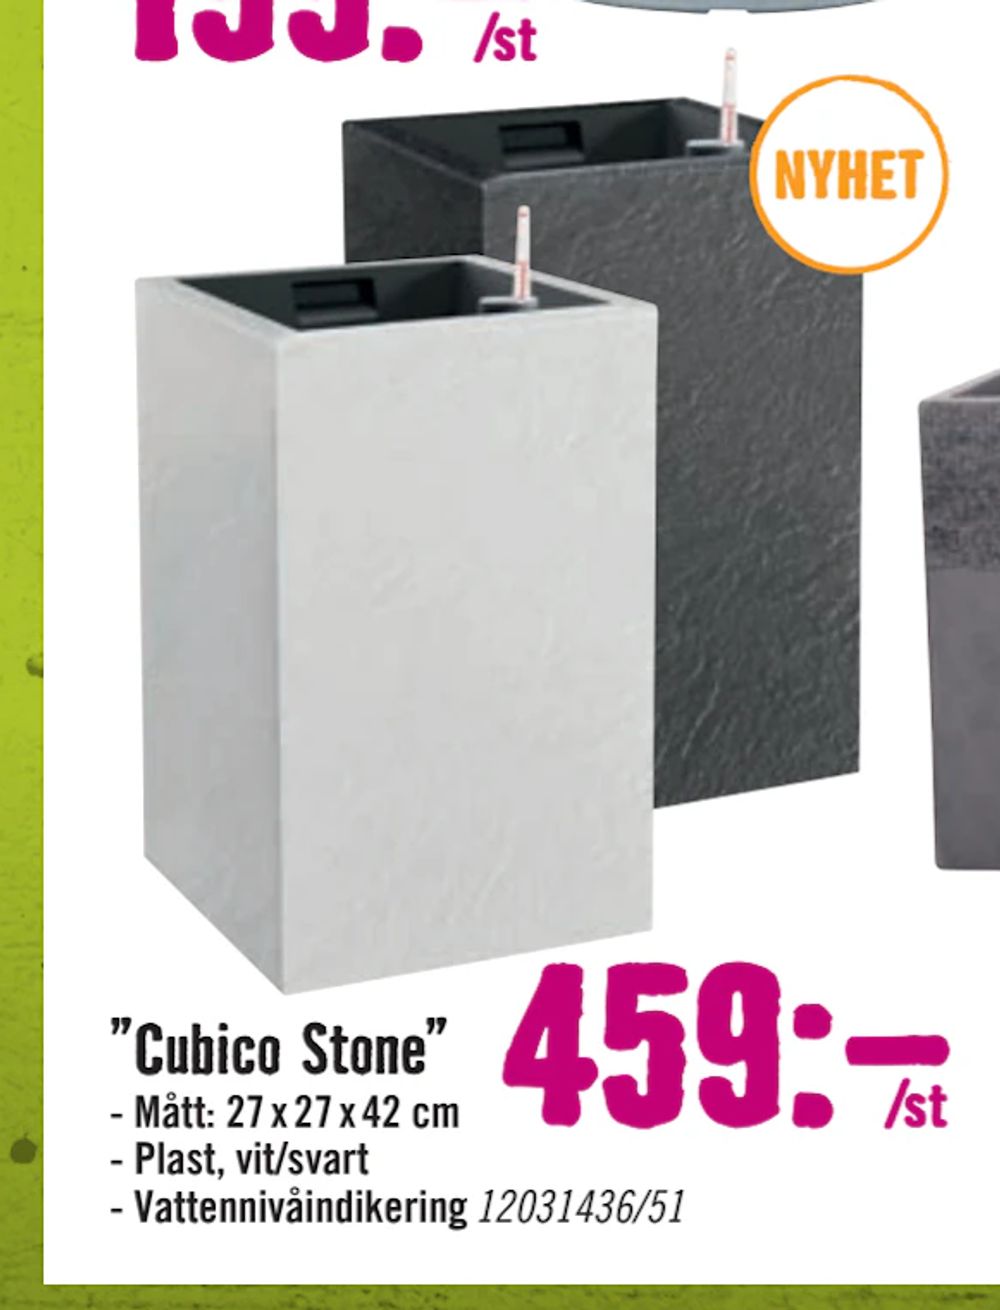 Erbjudanden på ”Cubico Stone” från Hornbach för 459 kr